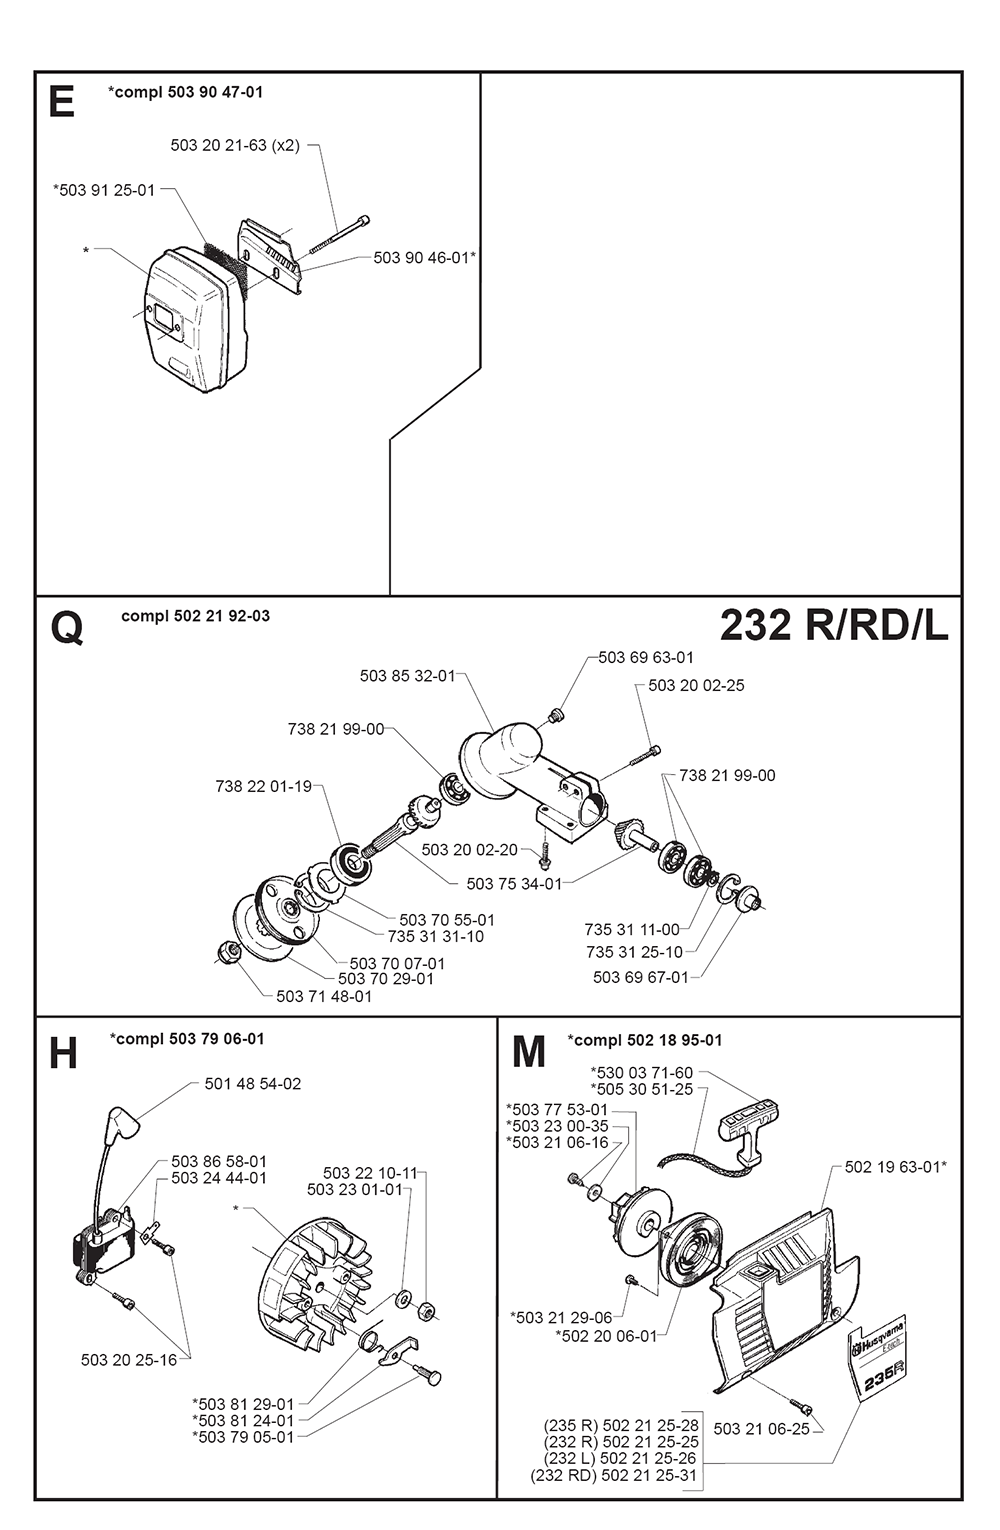 232 RD-(I980001)-Husqvarna-PB-1Break Down